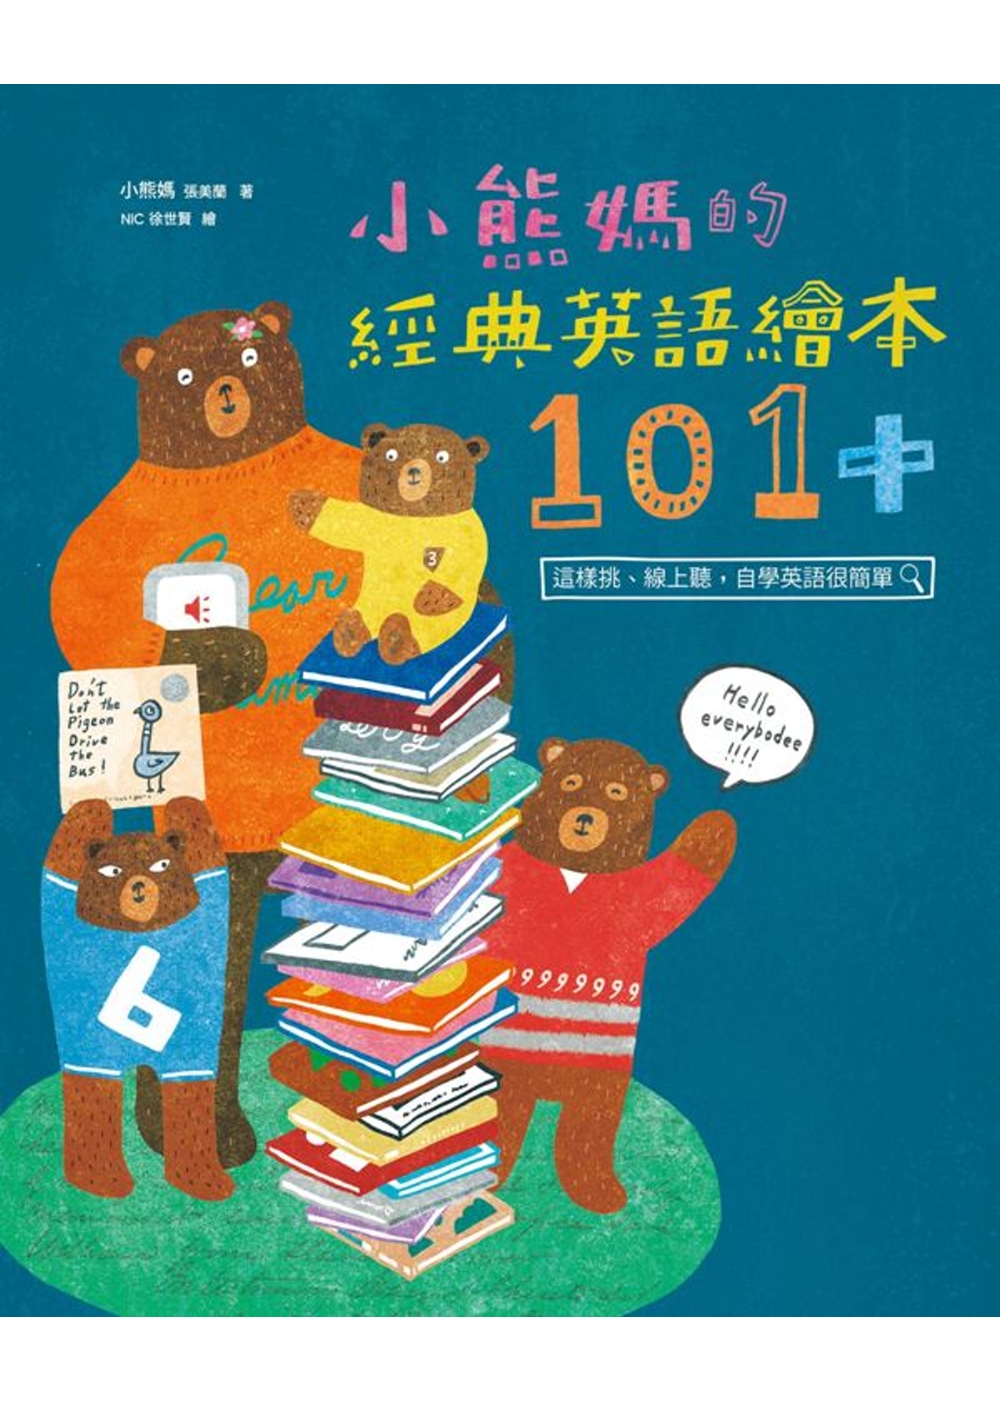 小熊媽的經典英語繪本101+：這樣挑、線上聽，自學英語很簡單